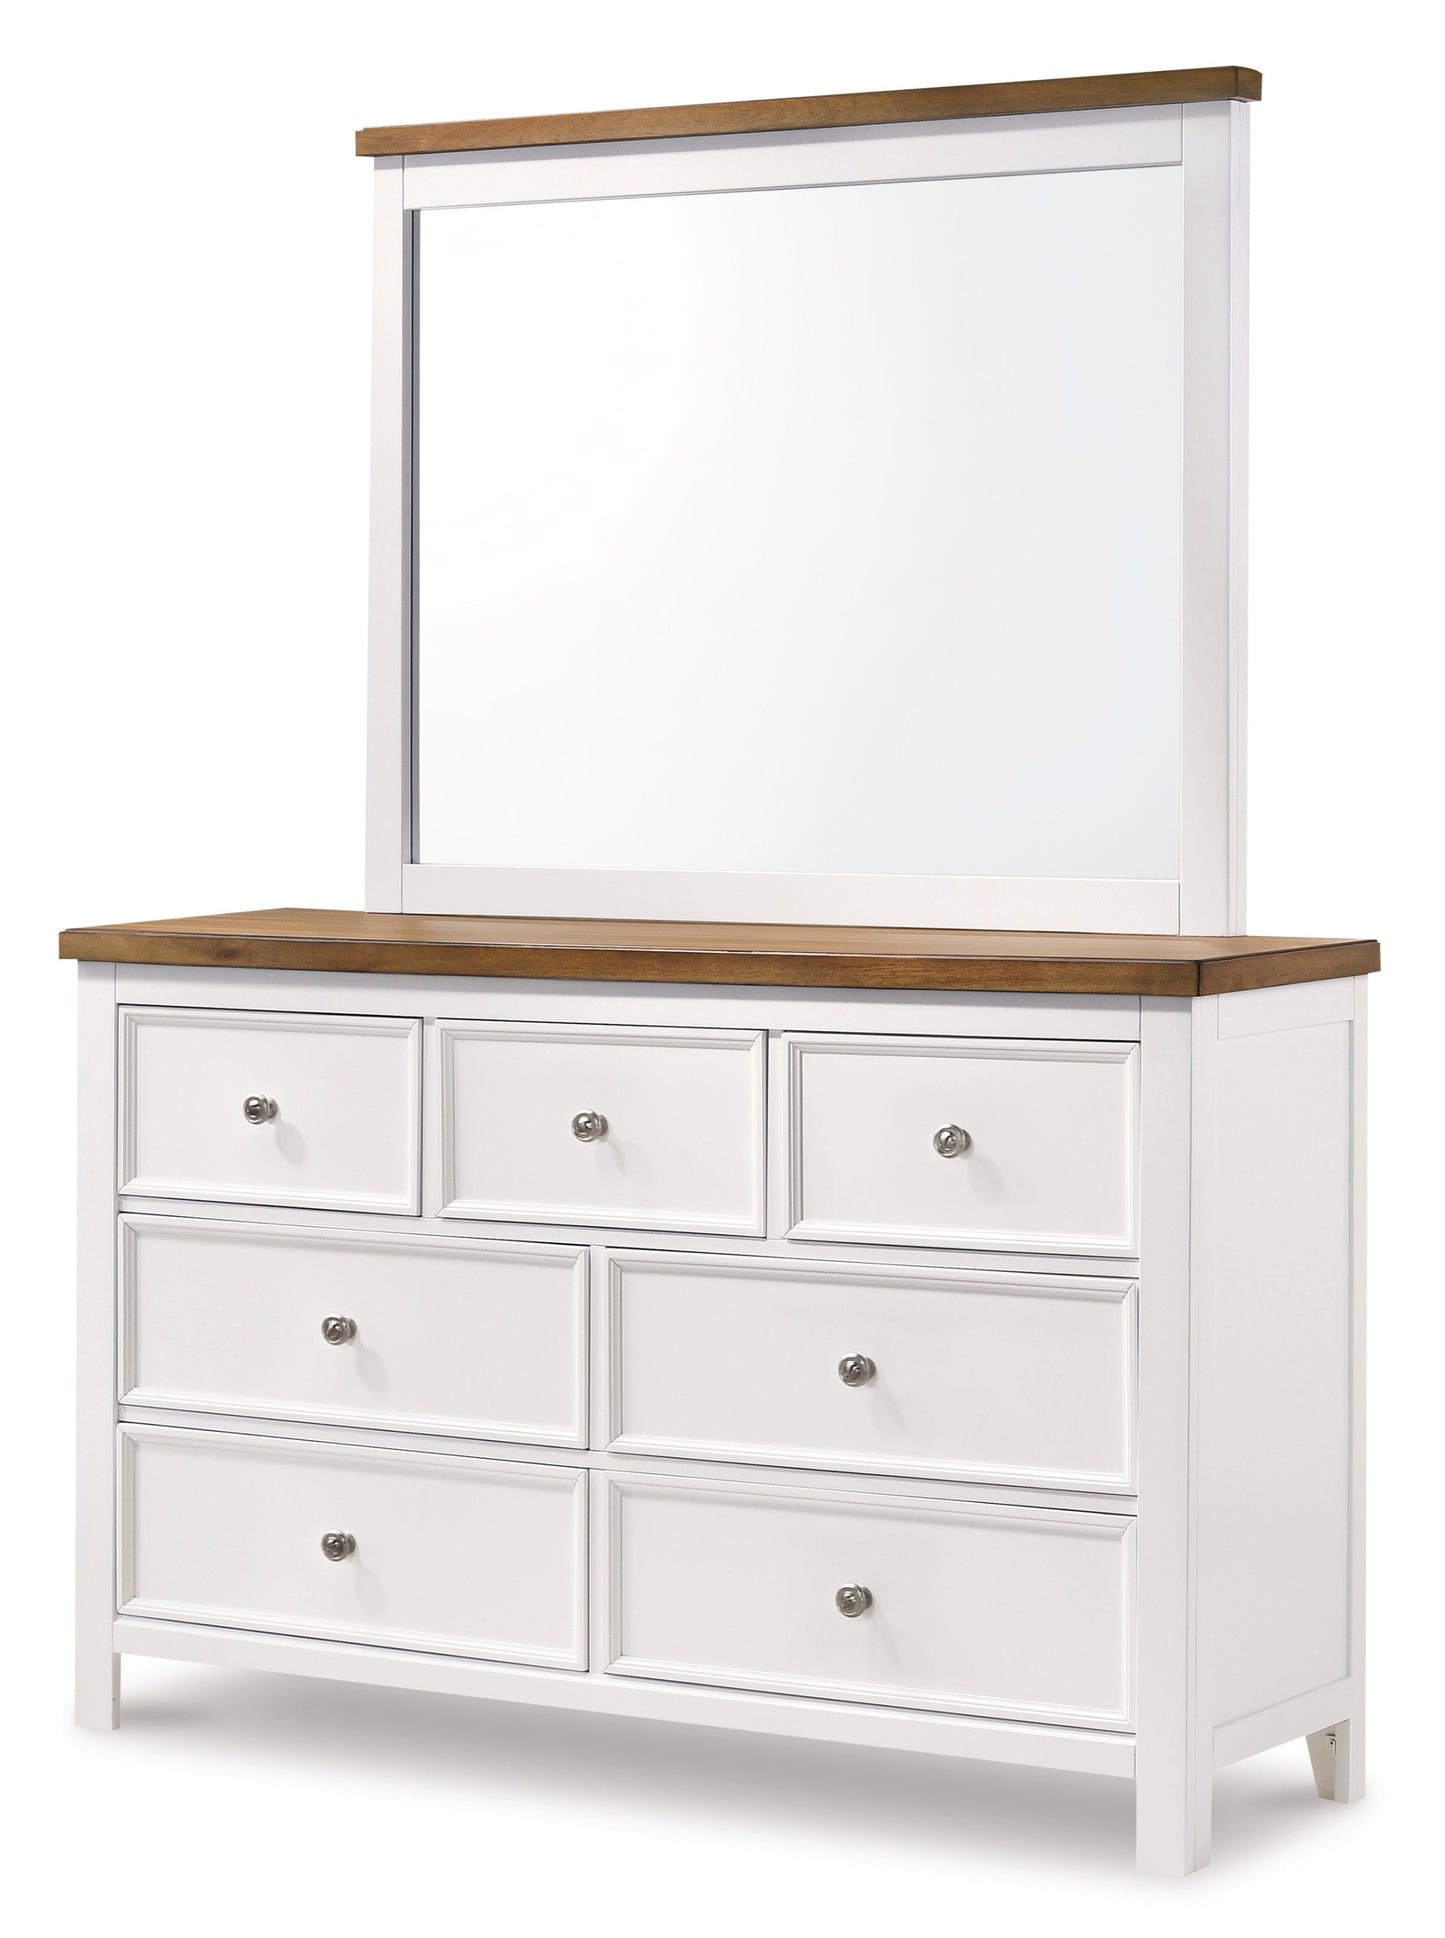 Westconi Dresser&Mirror - dresser